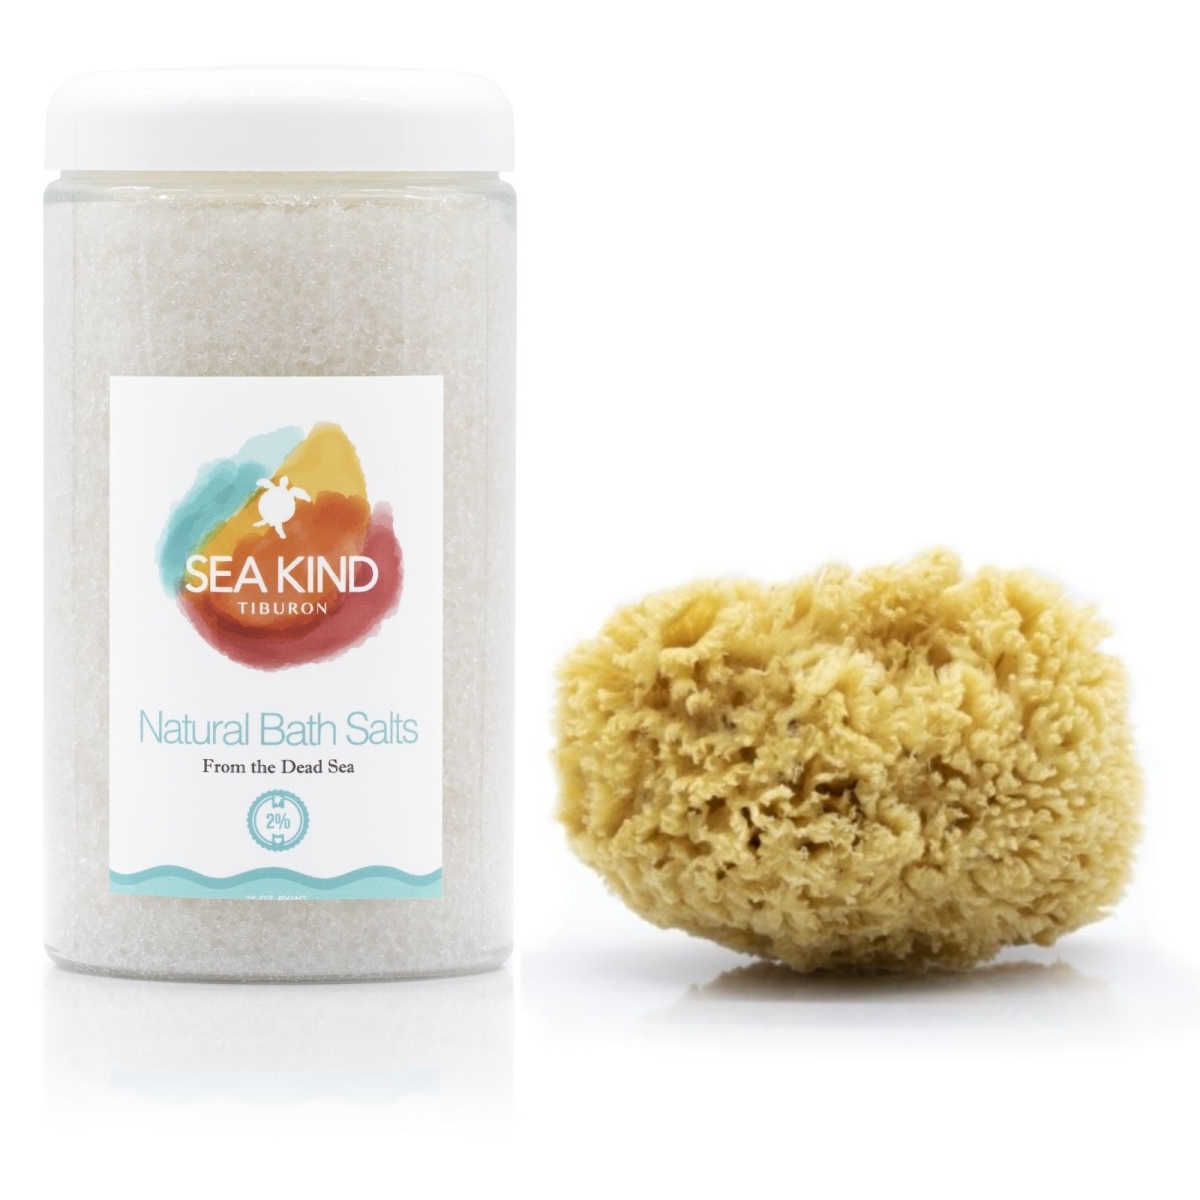 SK-SLT-5SPG-NTRL Dead Sea Bath Salts w/ Luxury 5.5' Sea Sponge - Natural -  Sea Kind